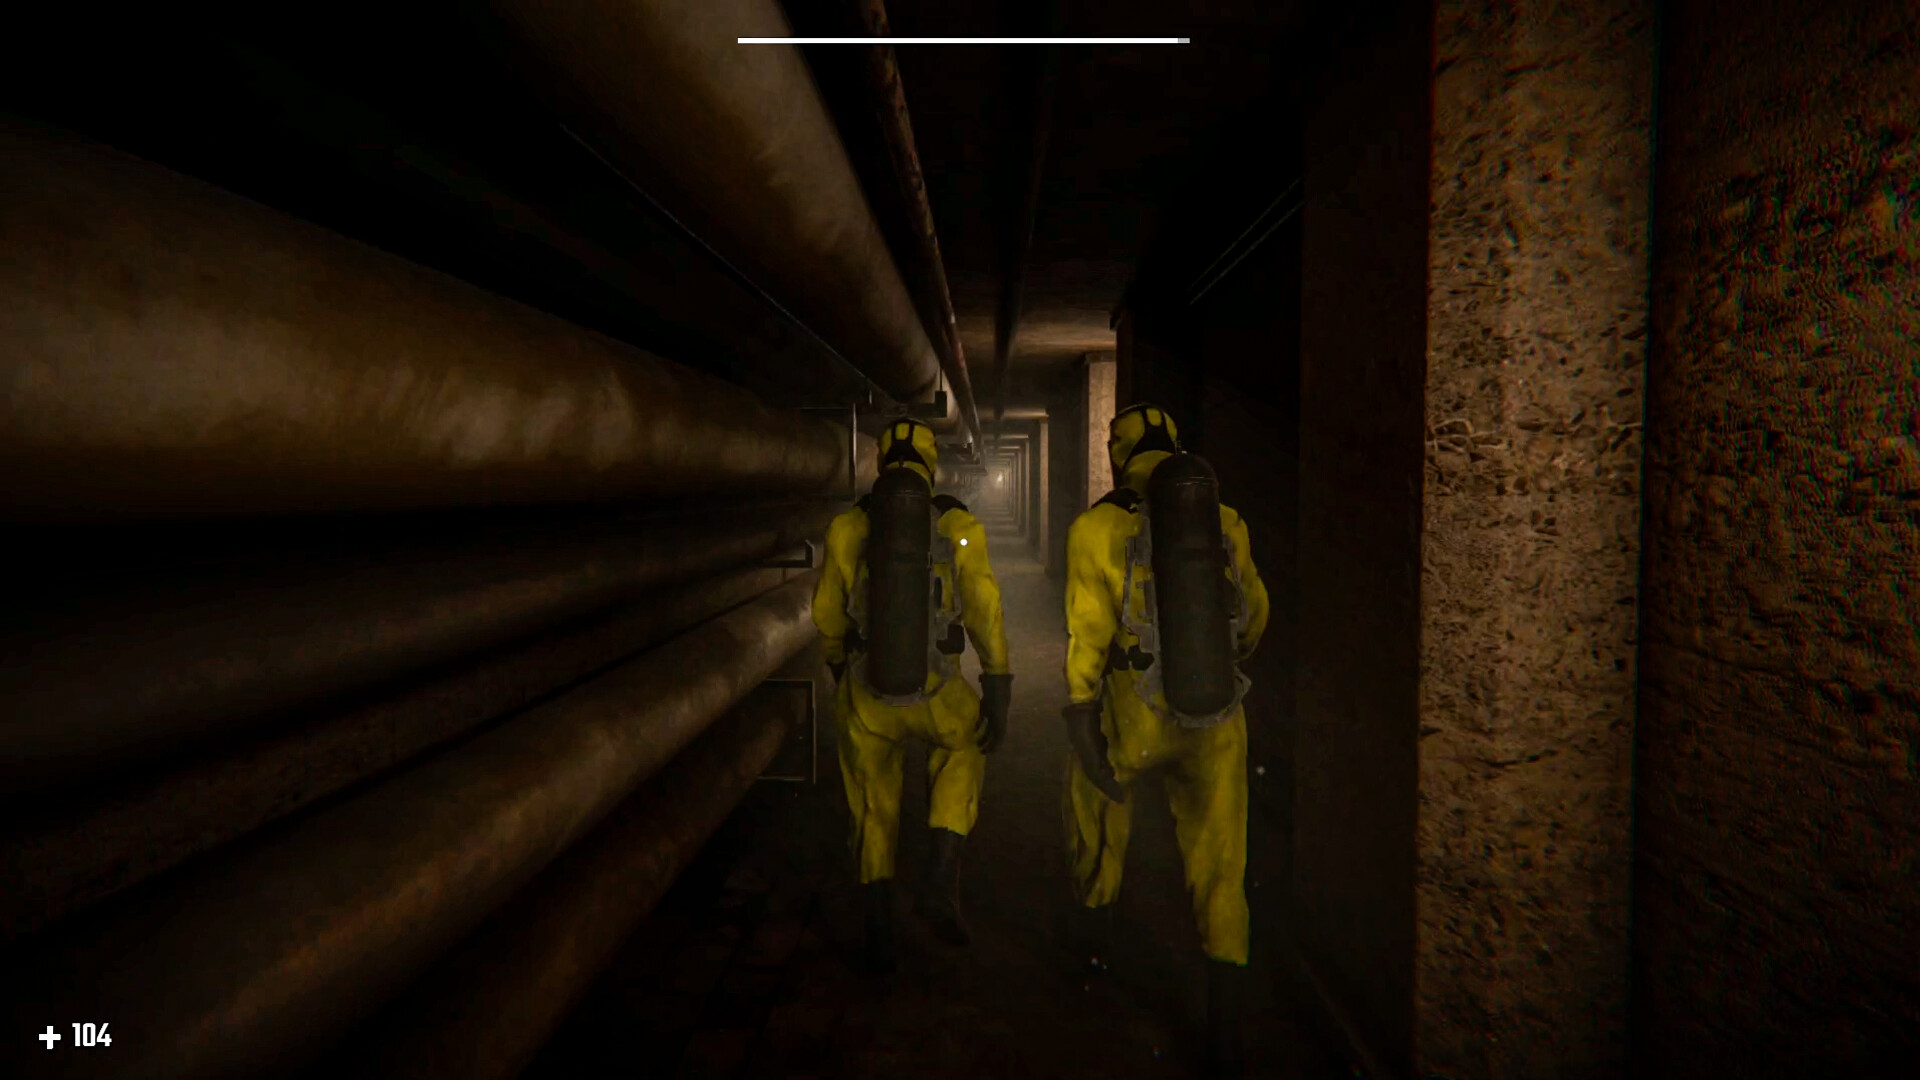 Backrooms Descent: Horror Game on Steam